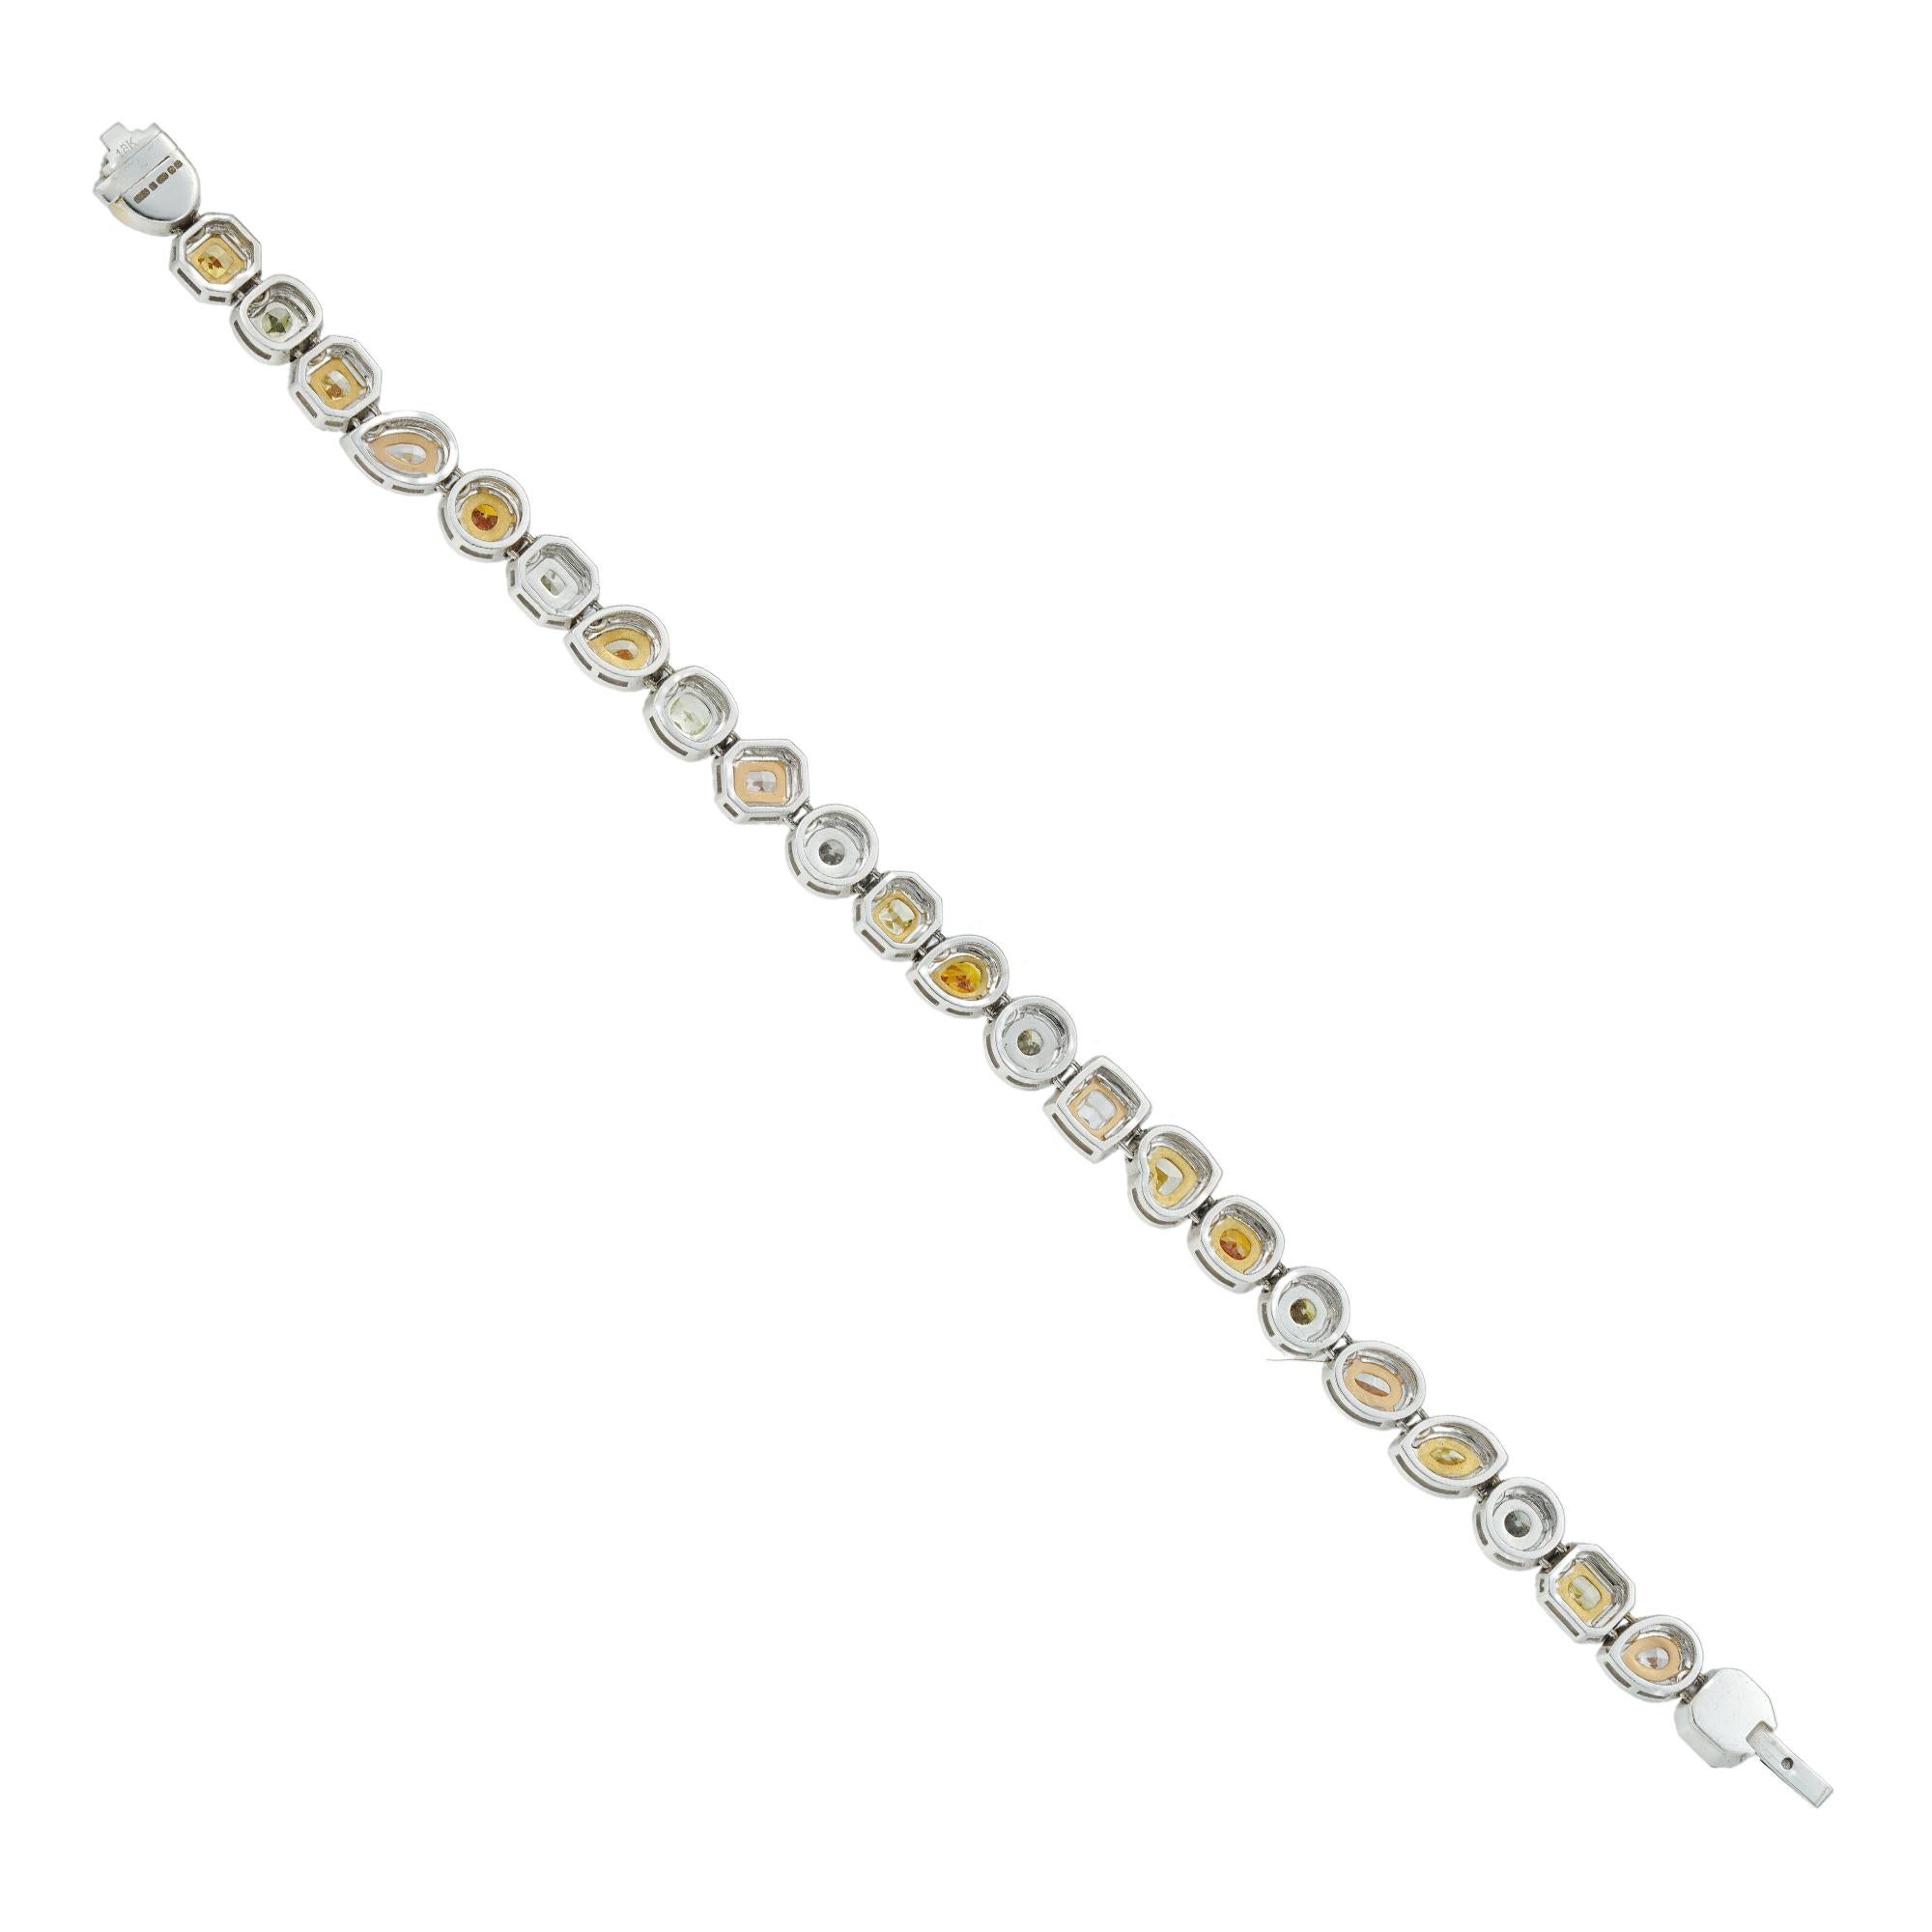 Brilliant Cut Exquisite Multicolored Fancy Diamond Link Bracelet